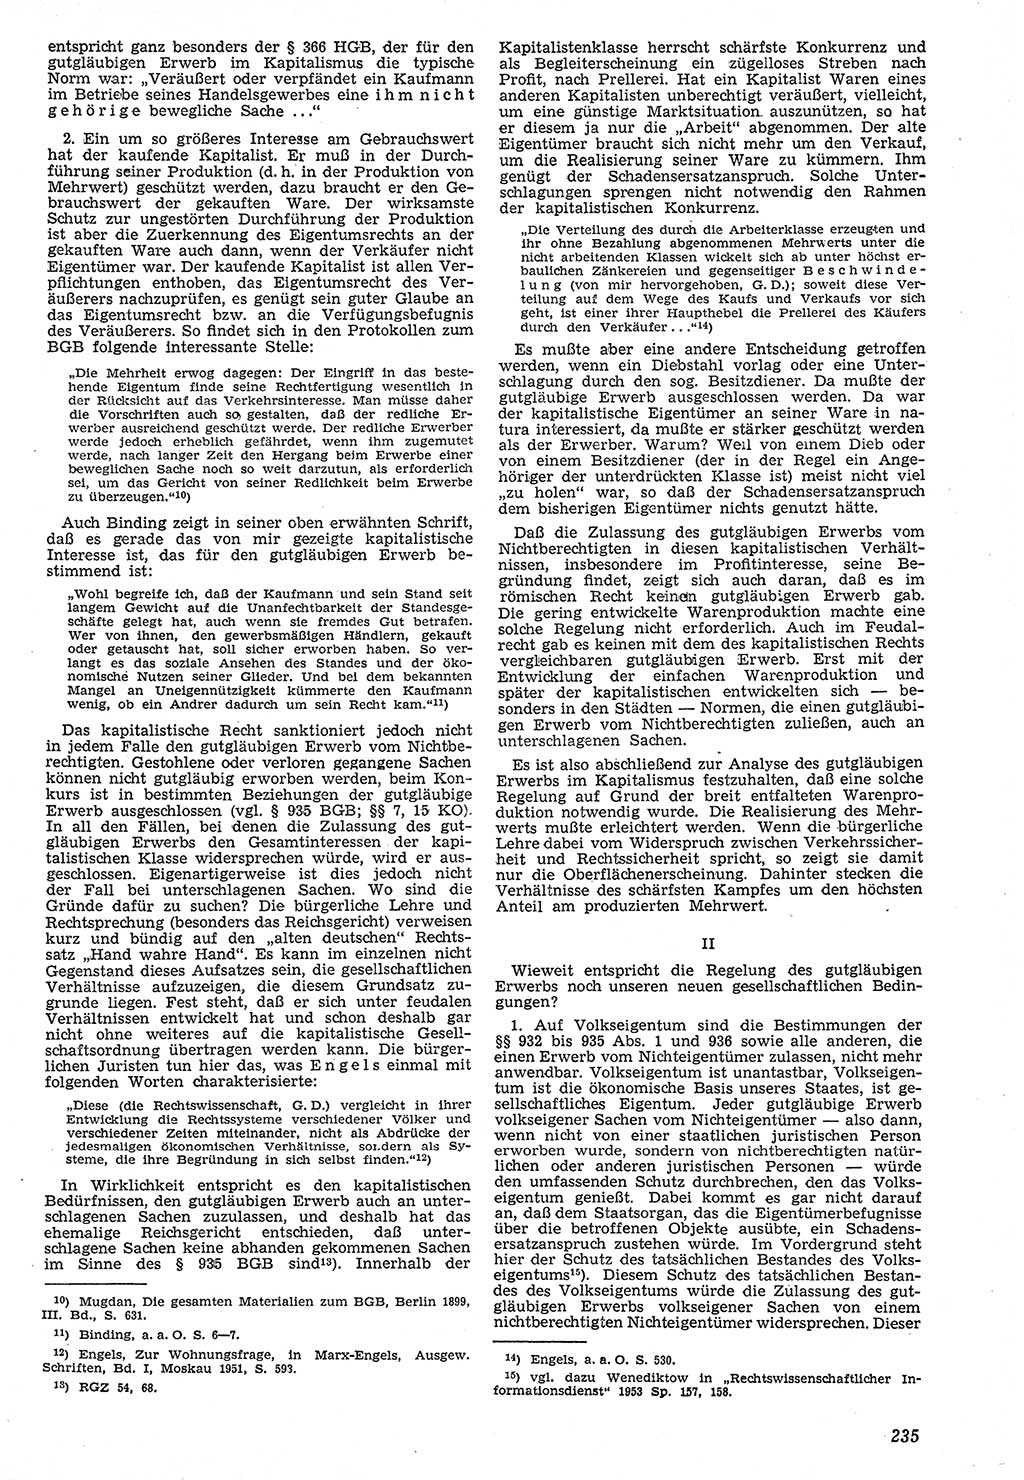 Neue Justiz (NJ), Zeitschrift für Recht und Rechtswissenschaft [Deutsche Demokratische Republik (DDR)], 7. Jahrgang 1953, Seite 235 (NJ DDR 1953, S. 235)